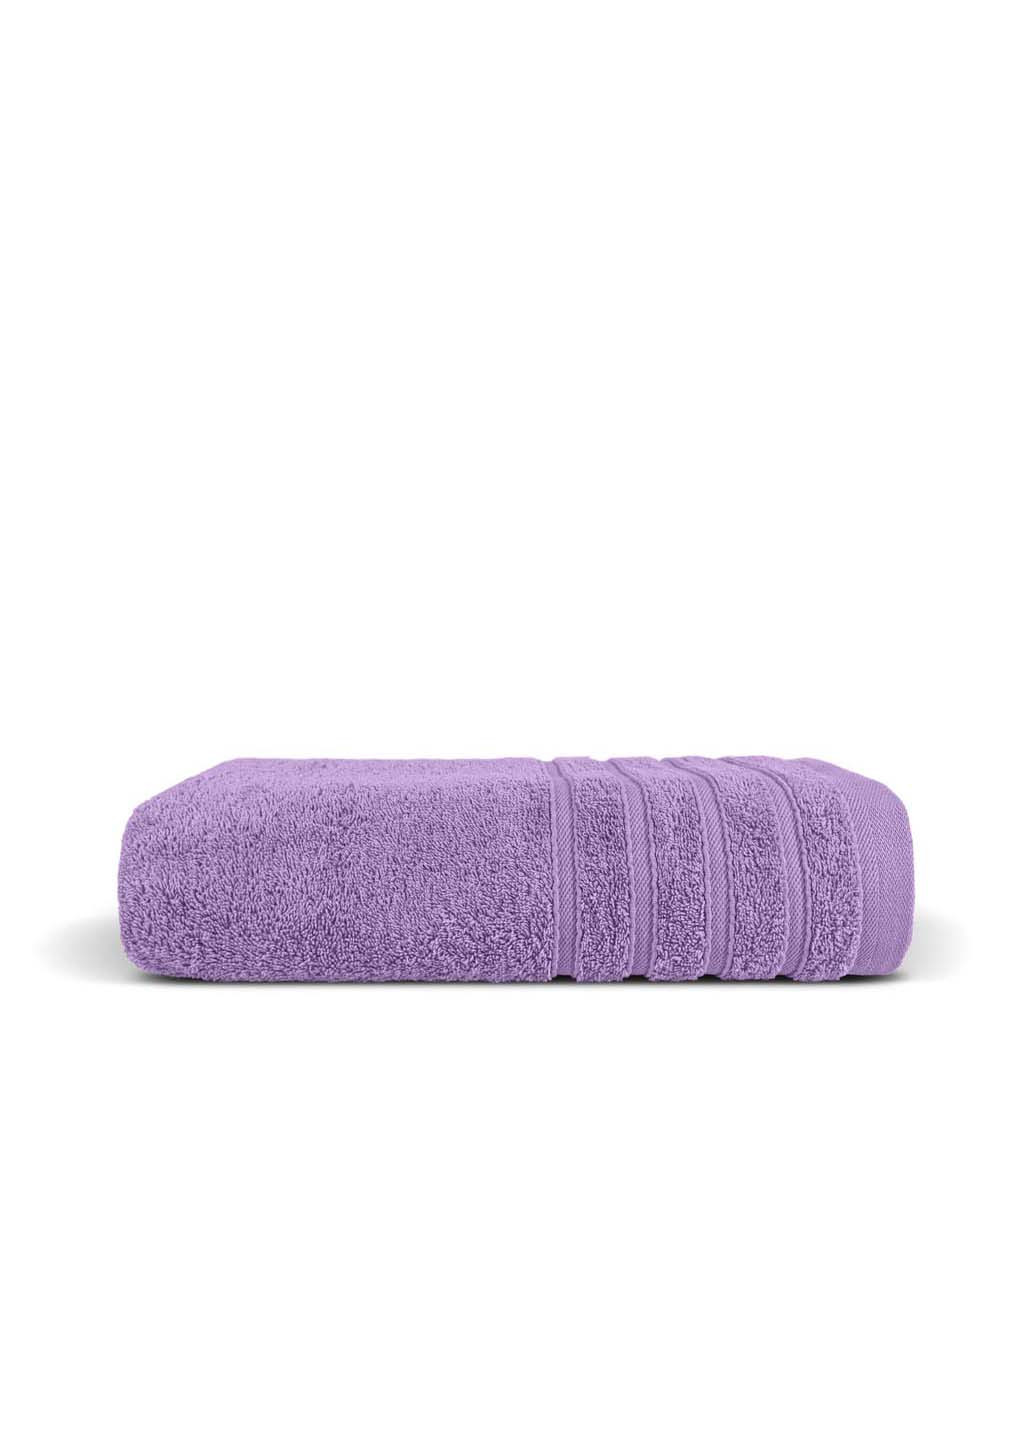 Cosas полотенце махровое 30х50 см фиолетовый производство -